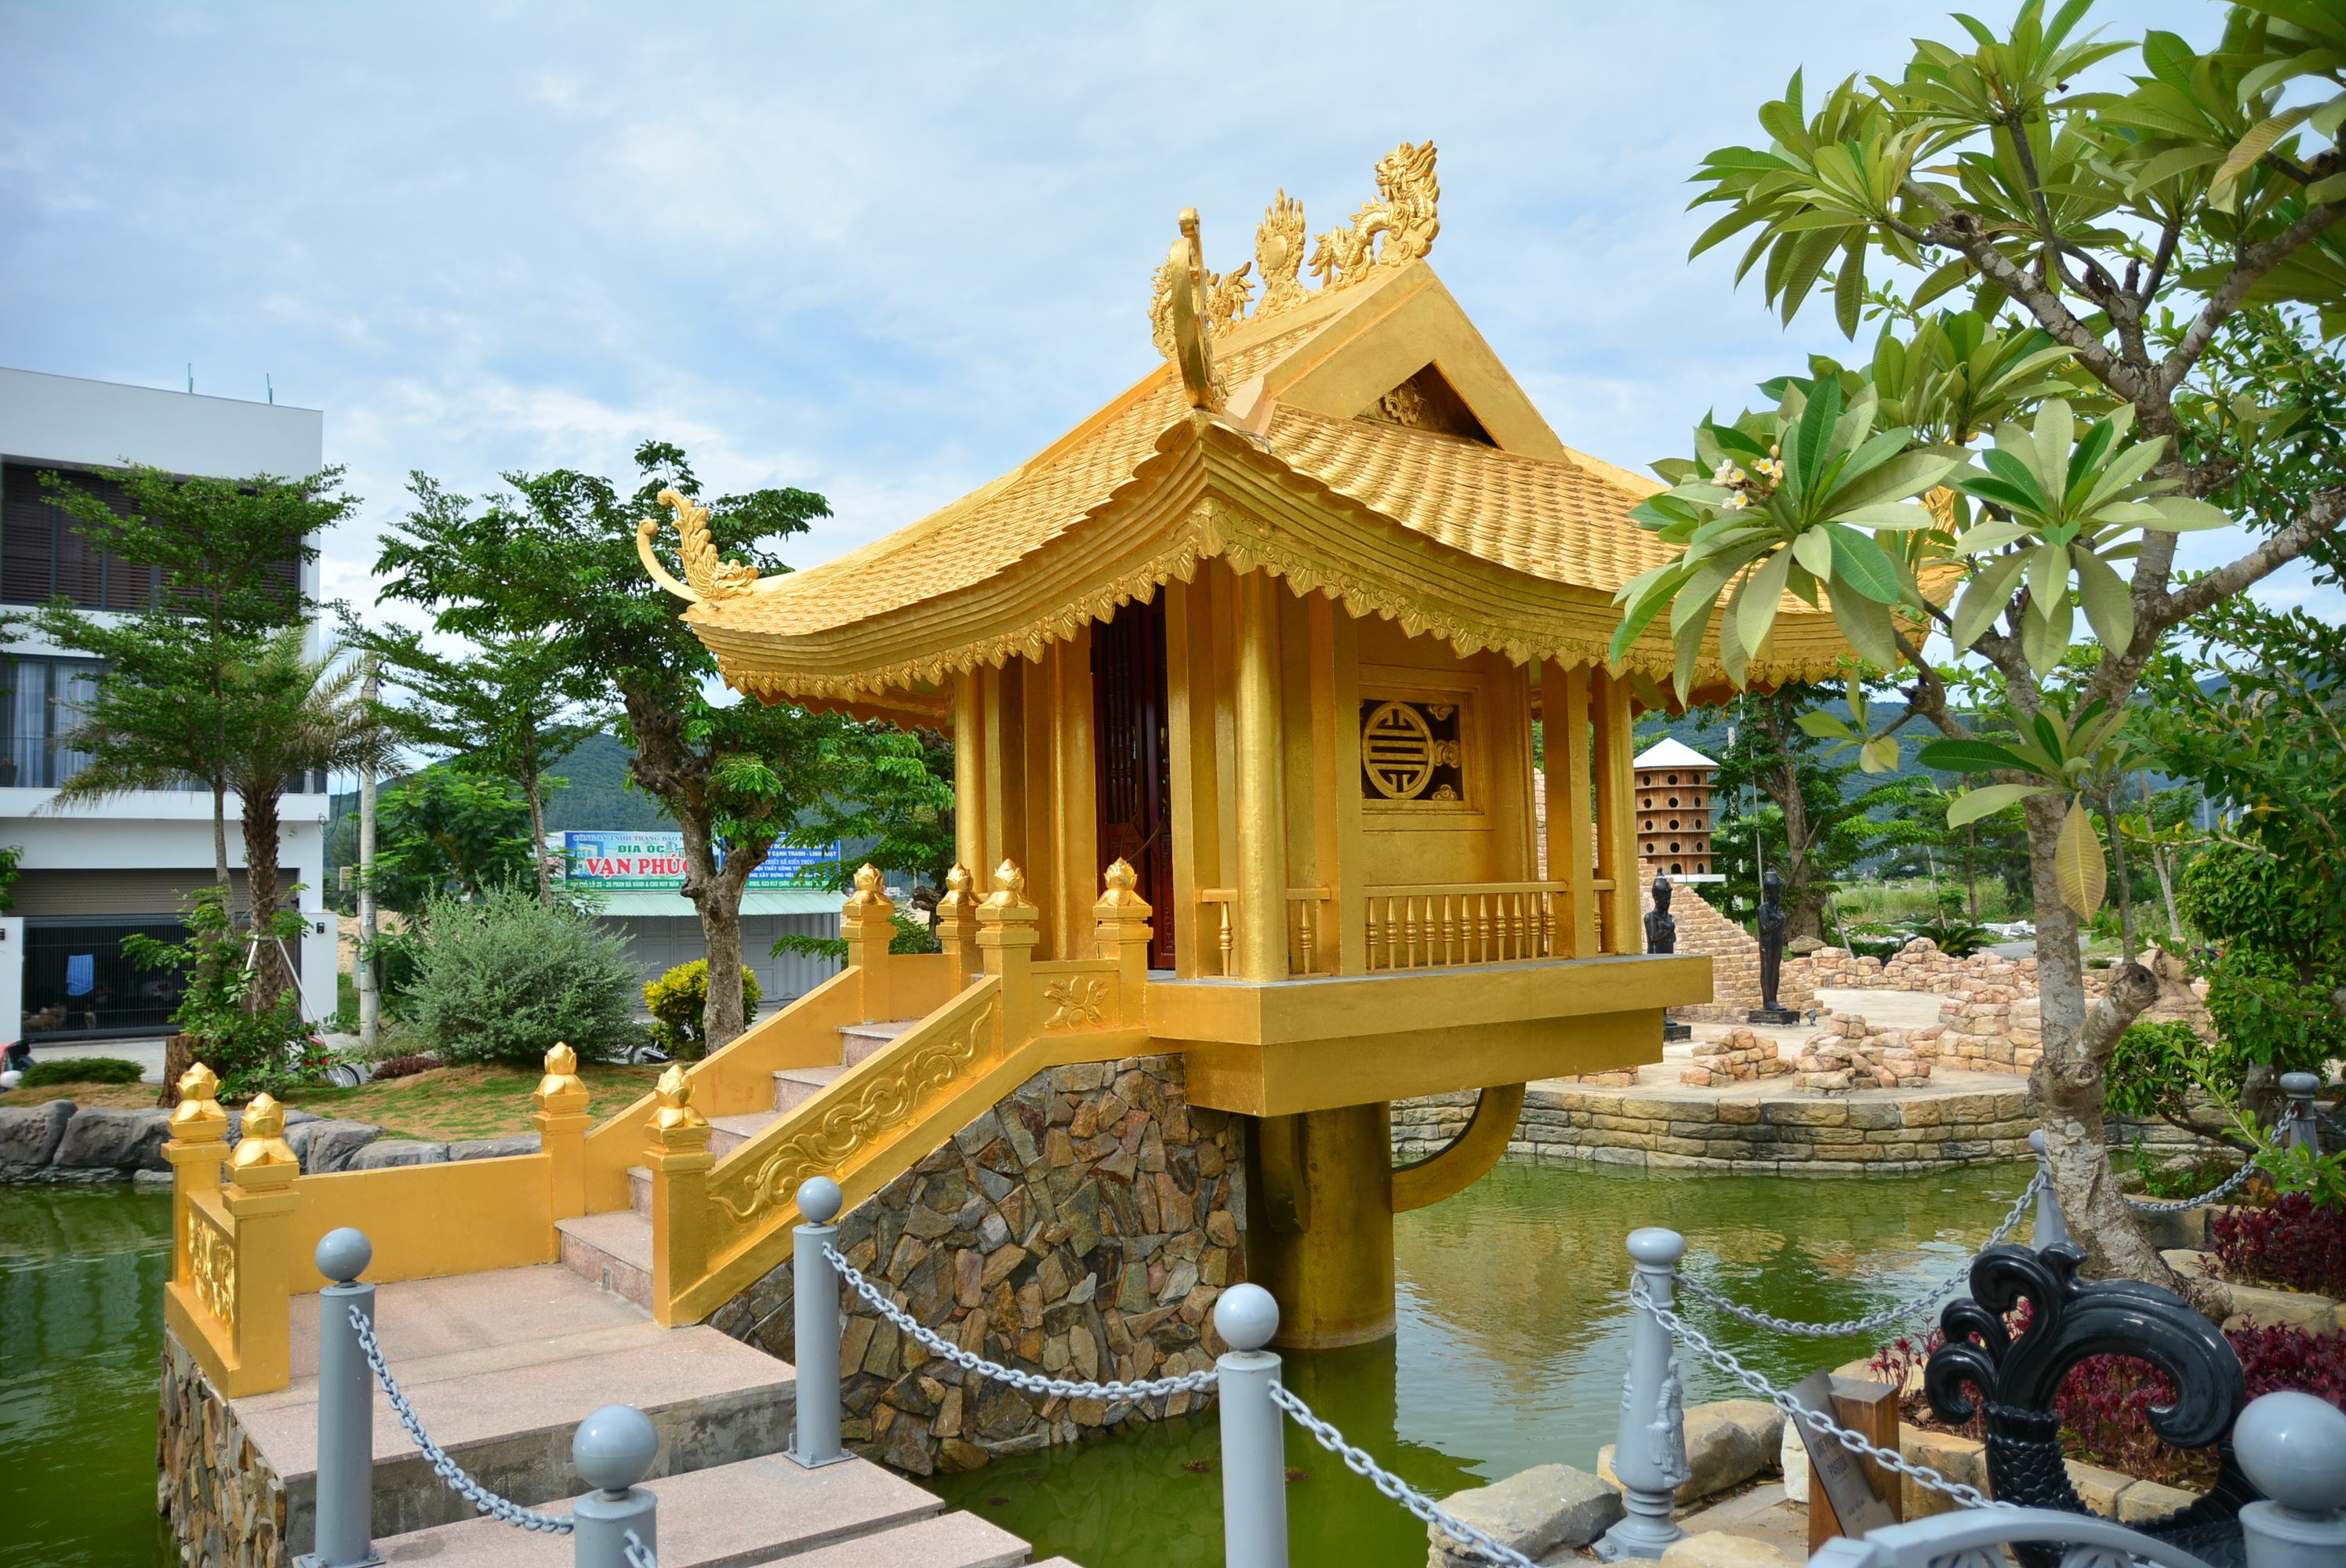 World Wonder Park Da Nang - An impressive gold-plated One Pillar Pagoda